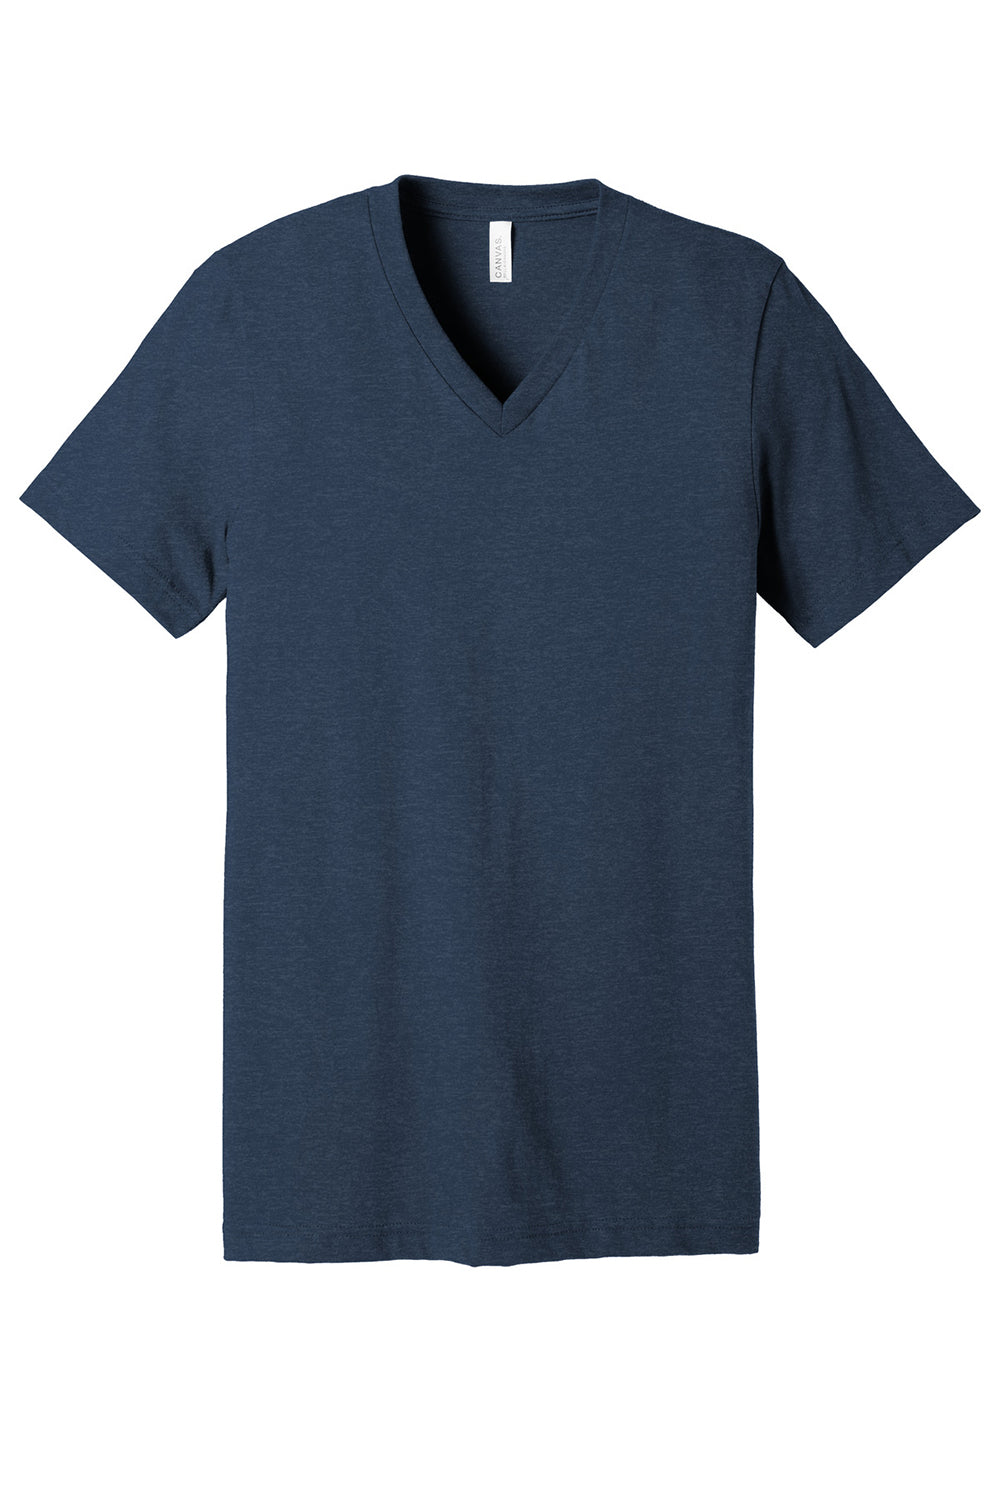 Bella + Canvas BC3005CVC Mens CVC Short Sleeve V-Neck T-Shirt Heather Navy Blue Flat Front